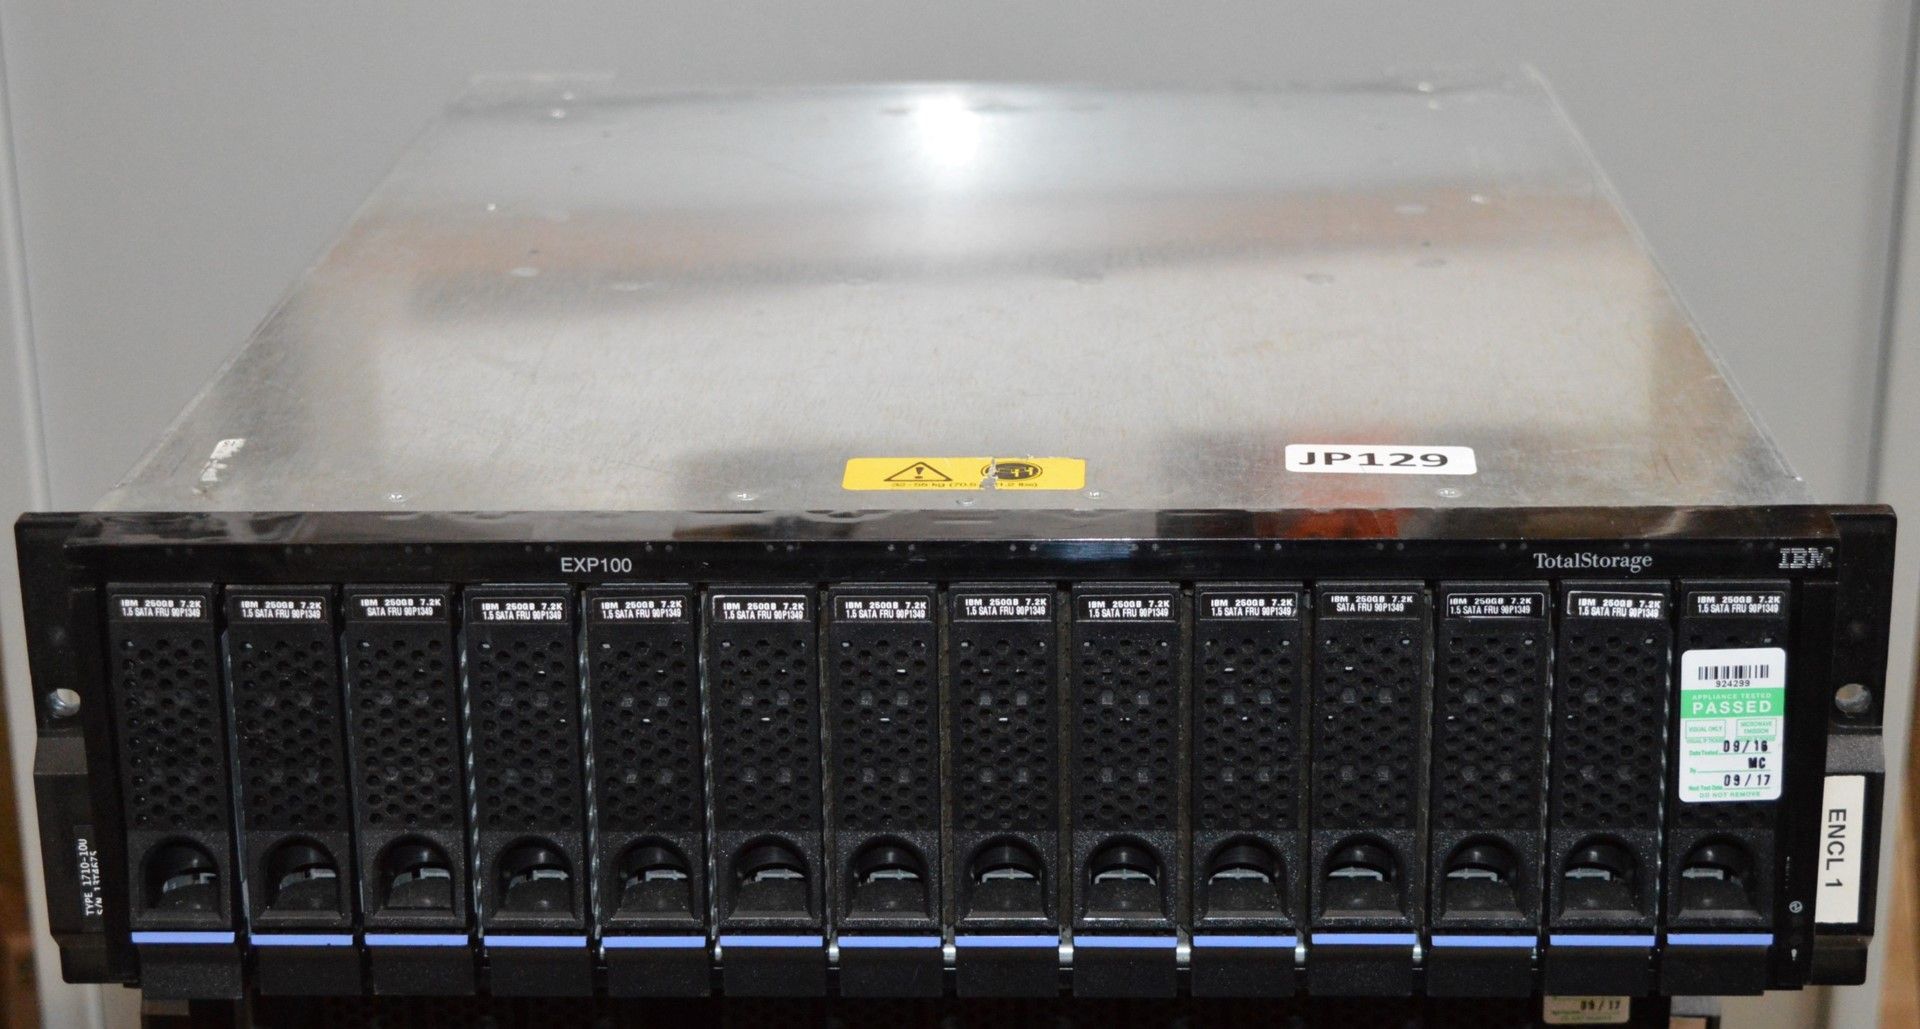 1 x IBM Total Storage EXP100 DS400 Hard Drive Expansion Bay - Model 1710 - CL400 - Ref JP129 - - Image 6 of 6